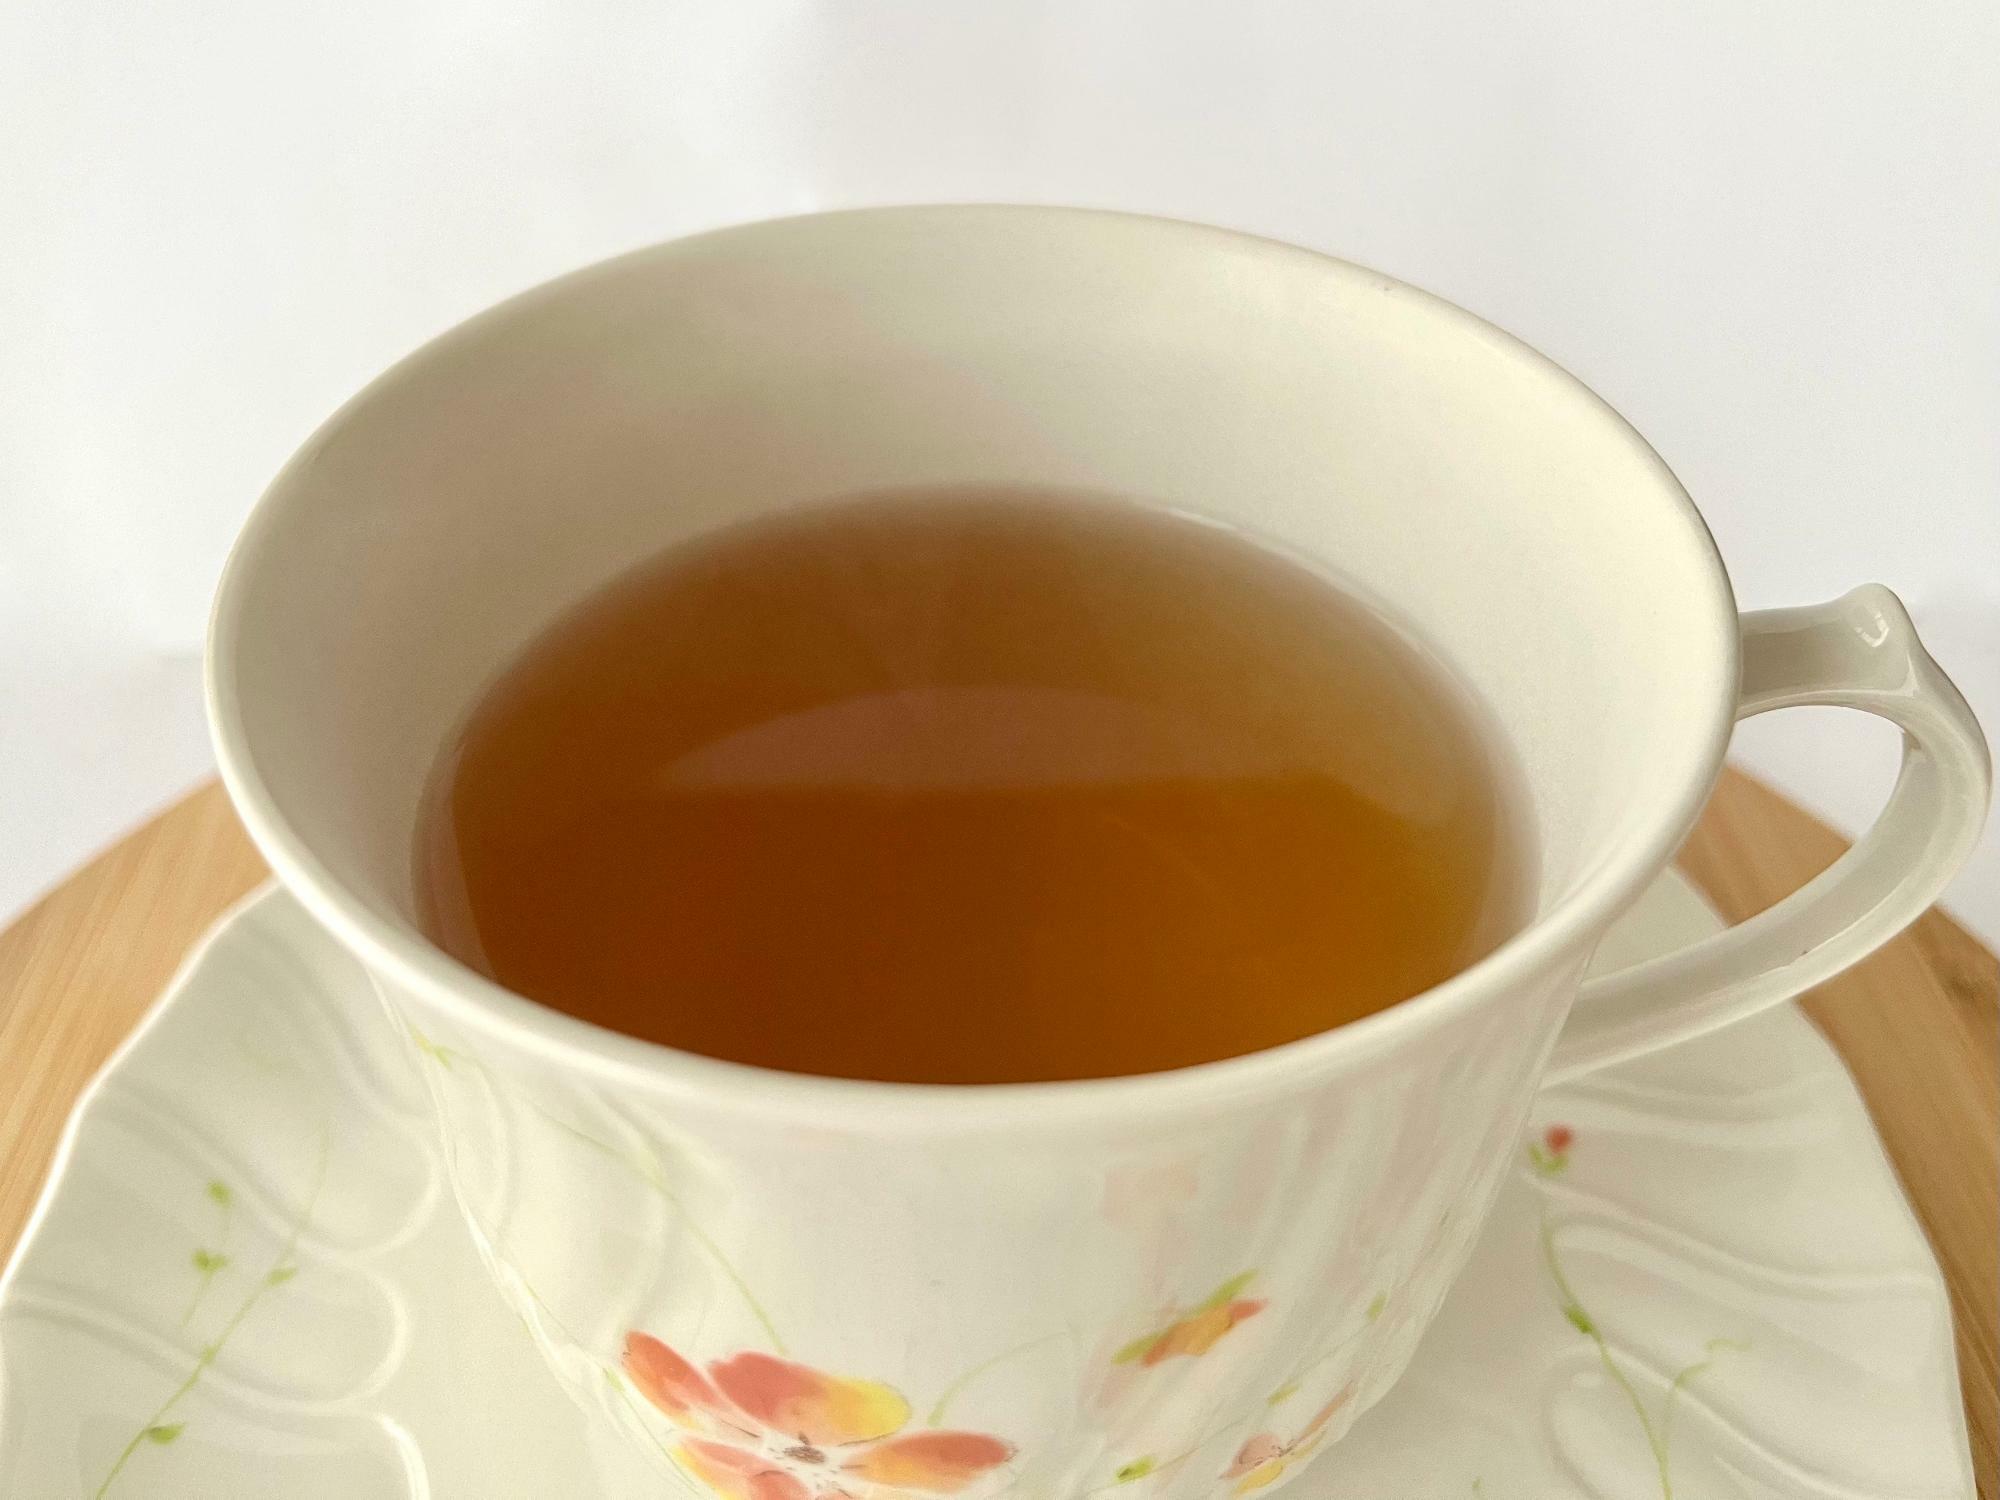 ▲ 見た目は紅茶とほとんど一緒の色合い。しかし香りは全く異なり、果物のように甘く爽やかなのだ。